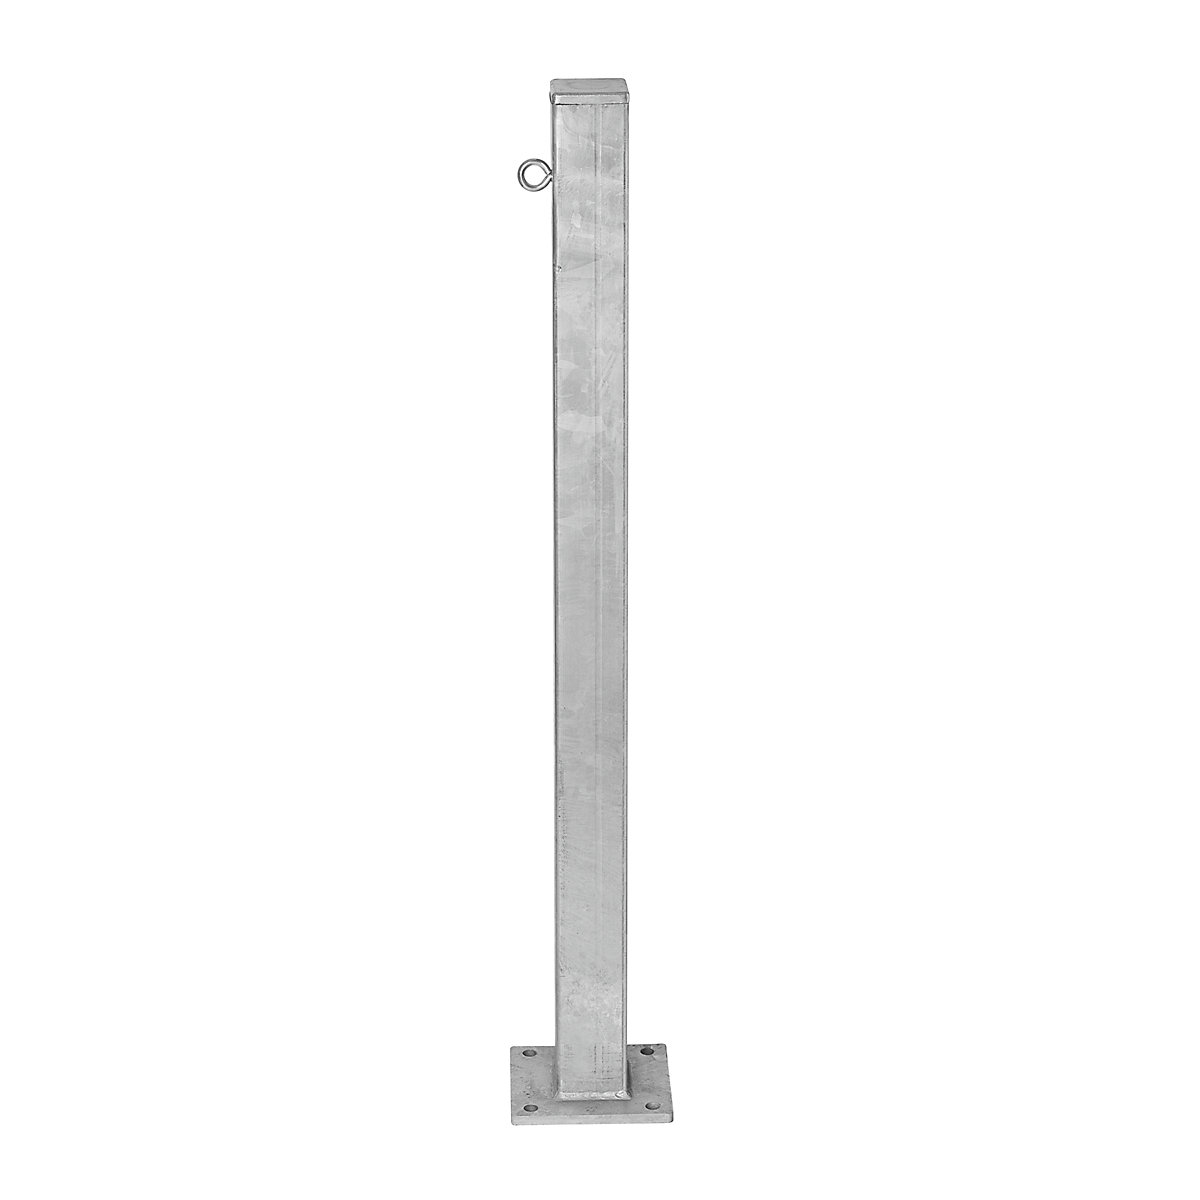 Čelični stup za ograđivanje, za pričvršćivanje tiplama, 70 x 70 mm, vruće pocinčana izvedba, 1 ušica lanaca-7